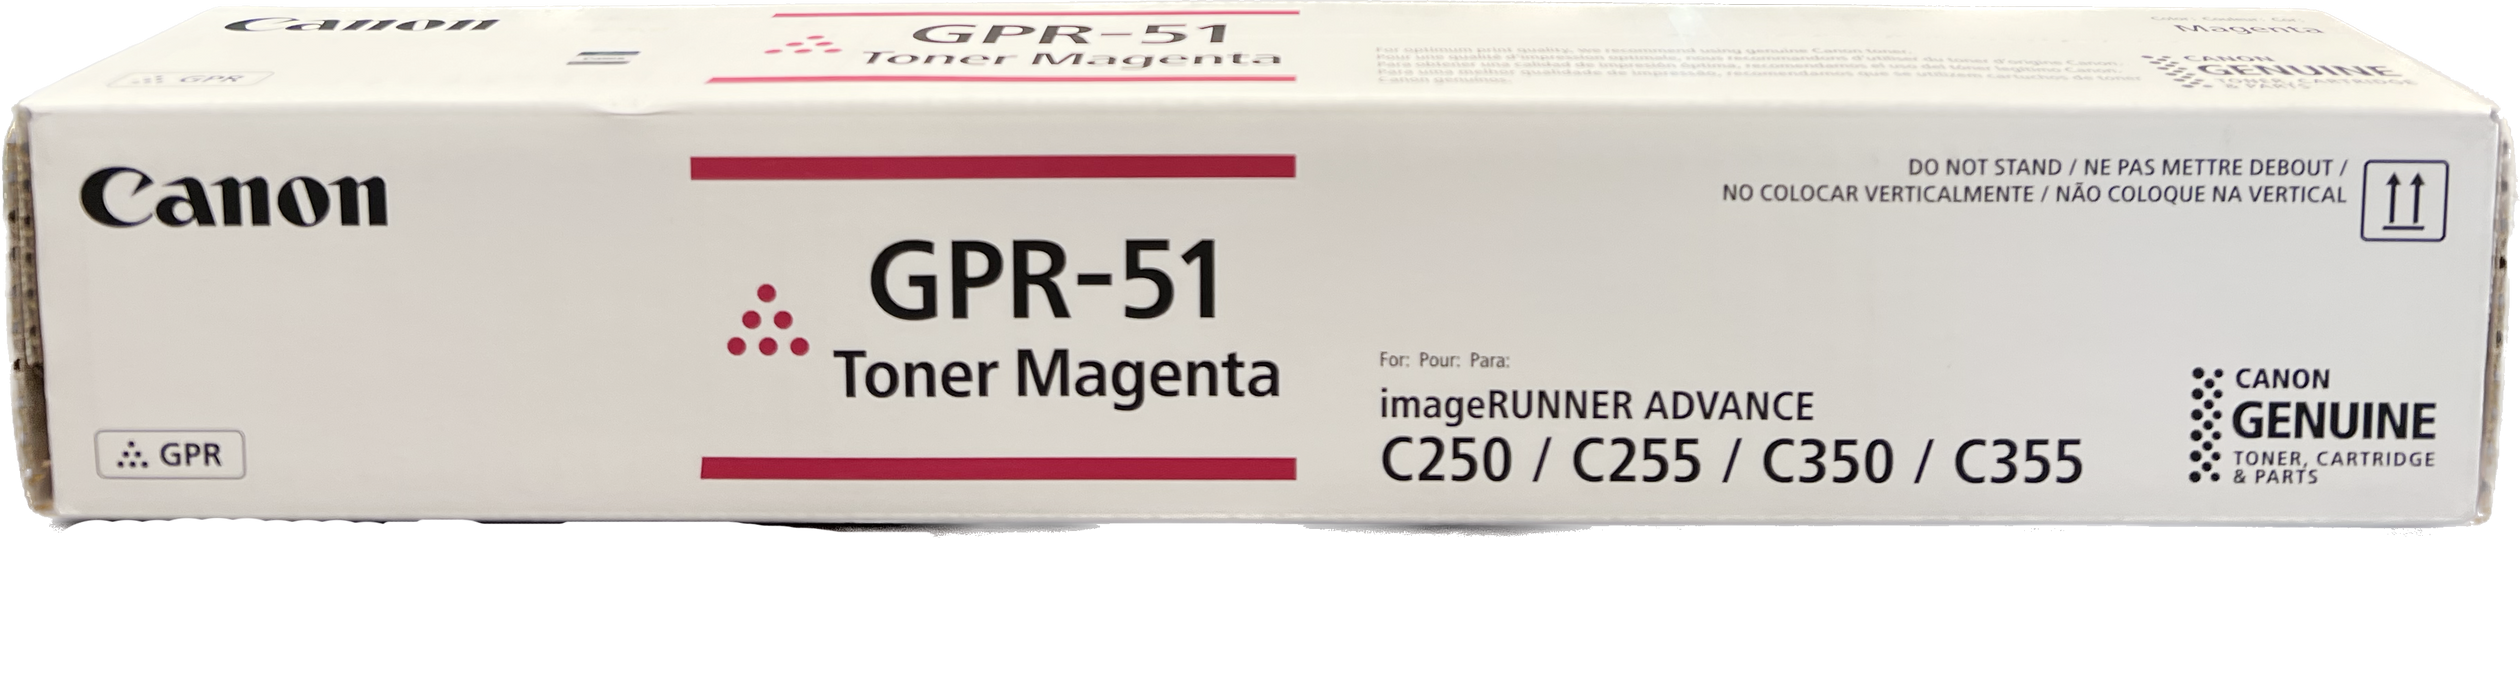 Genuine Canon Magenta Toner Cartridge | 8518B003 | GPR-51M